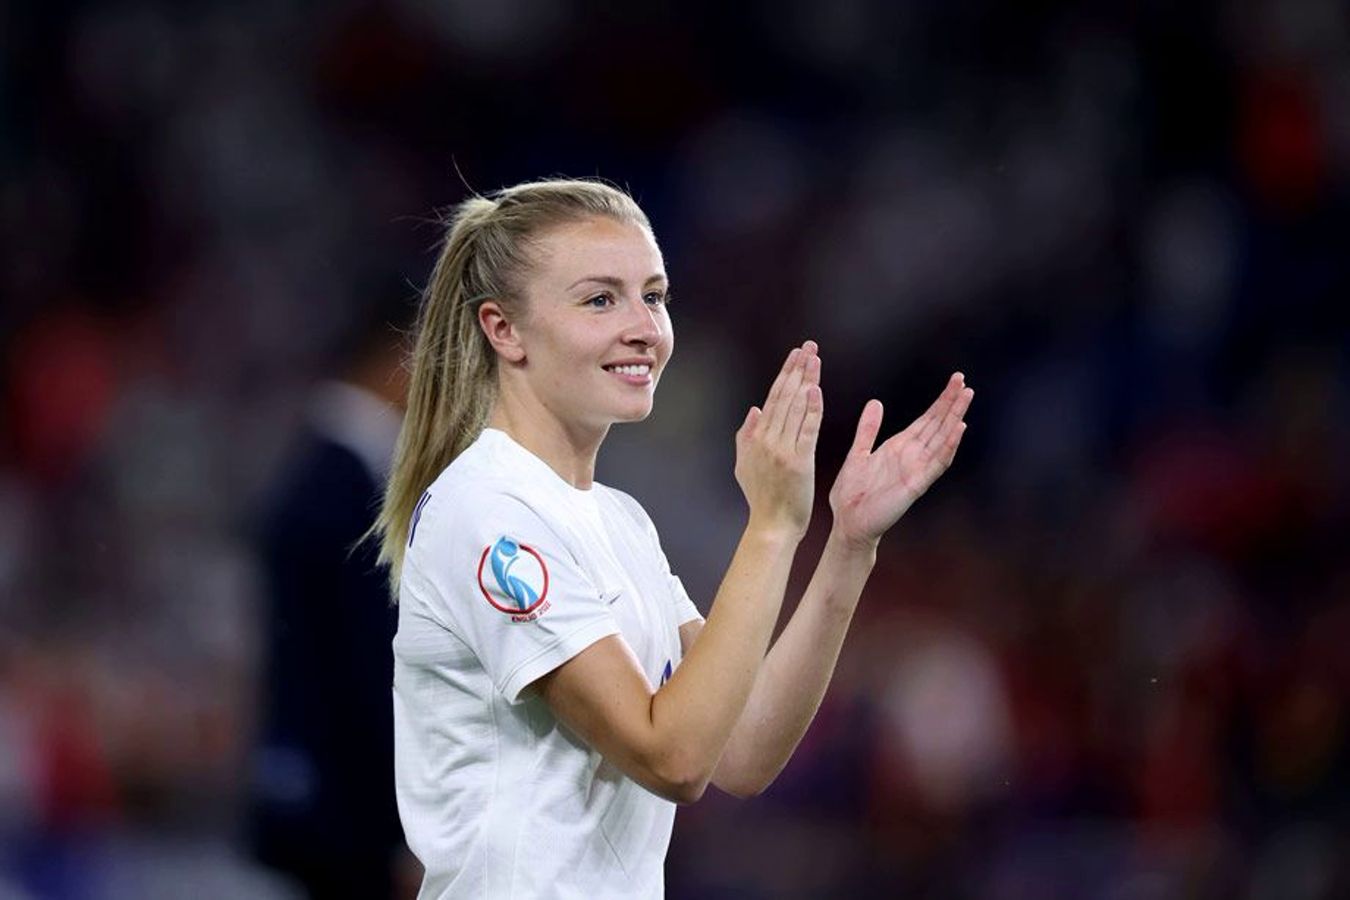 Капитан женской сборной Англии Уильямсон: нет интереса смотреть чемпионат мира в Катаре